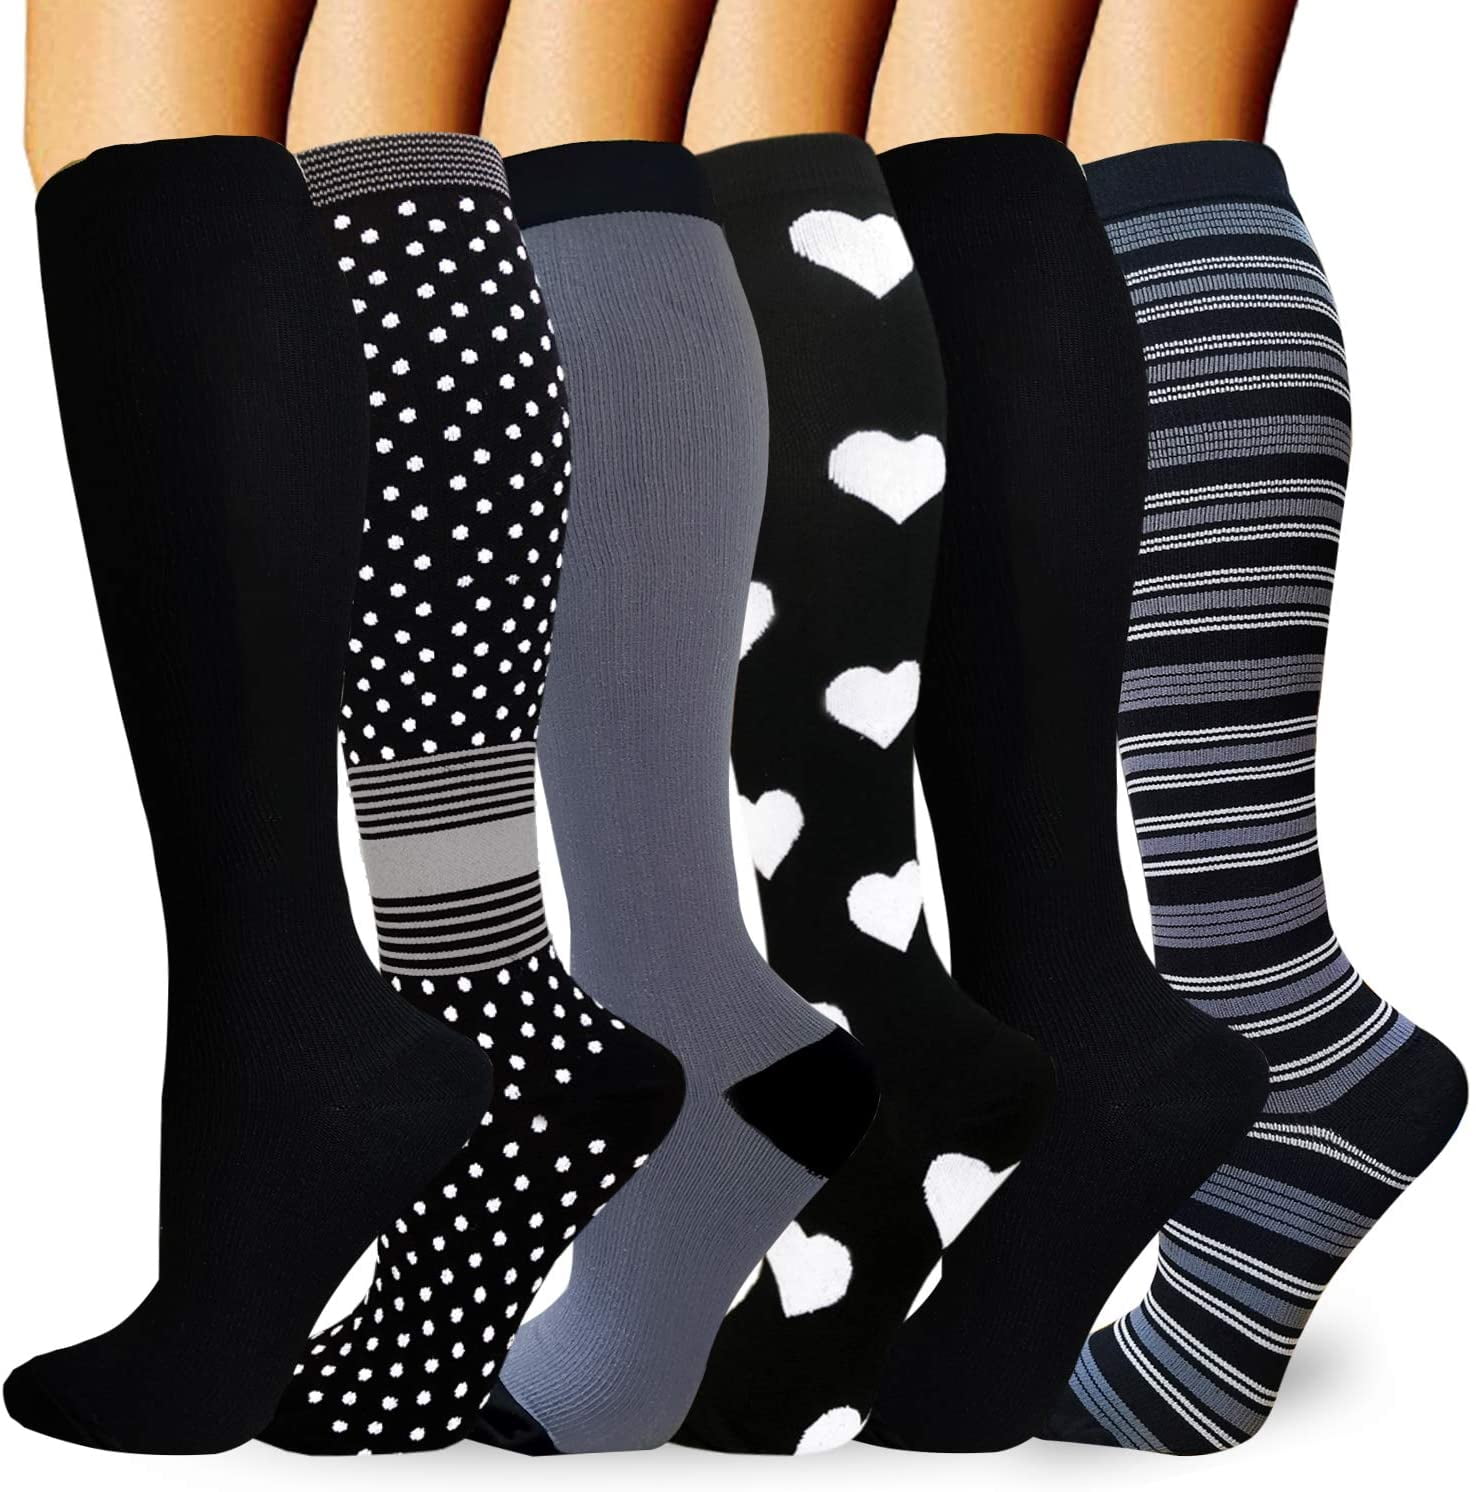 best compression socks for men 15mg